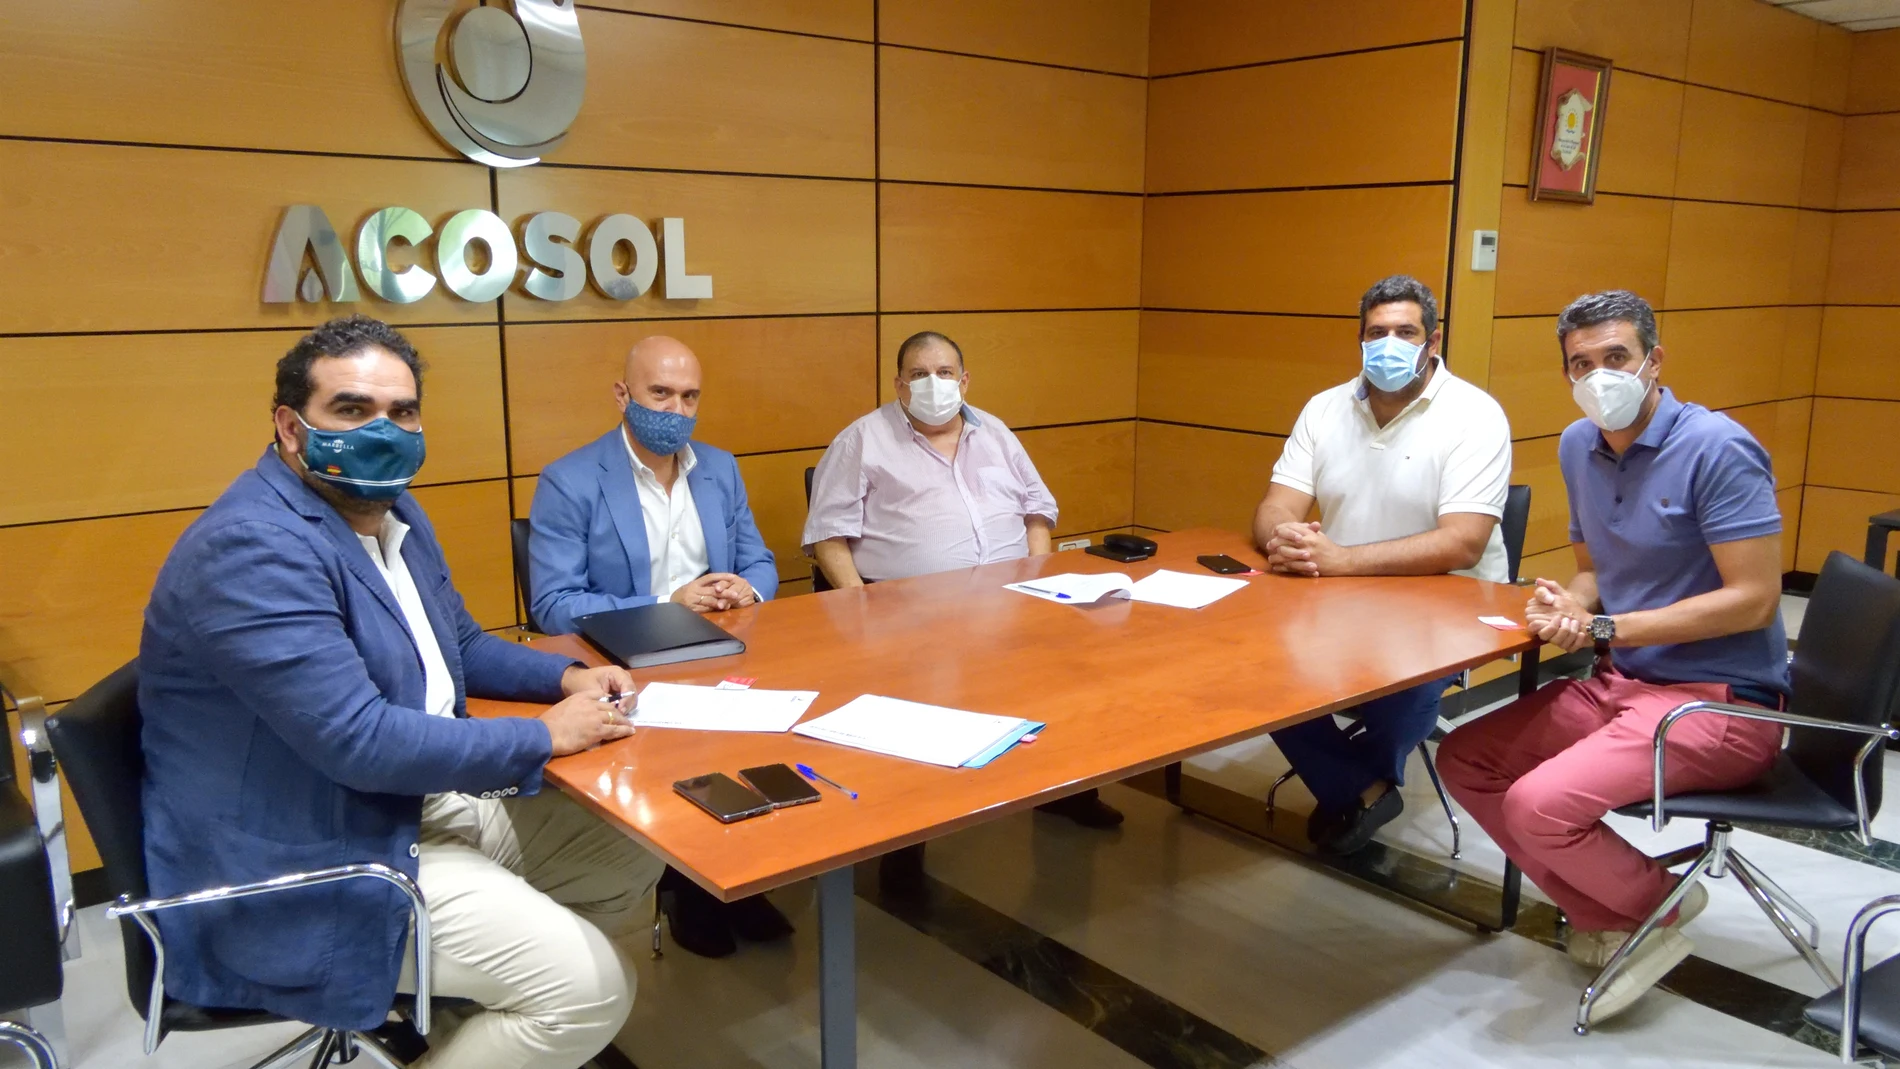 El equipo de Acosol en la presentación del nuevo servicio de call center